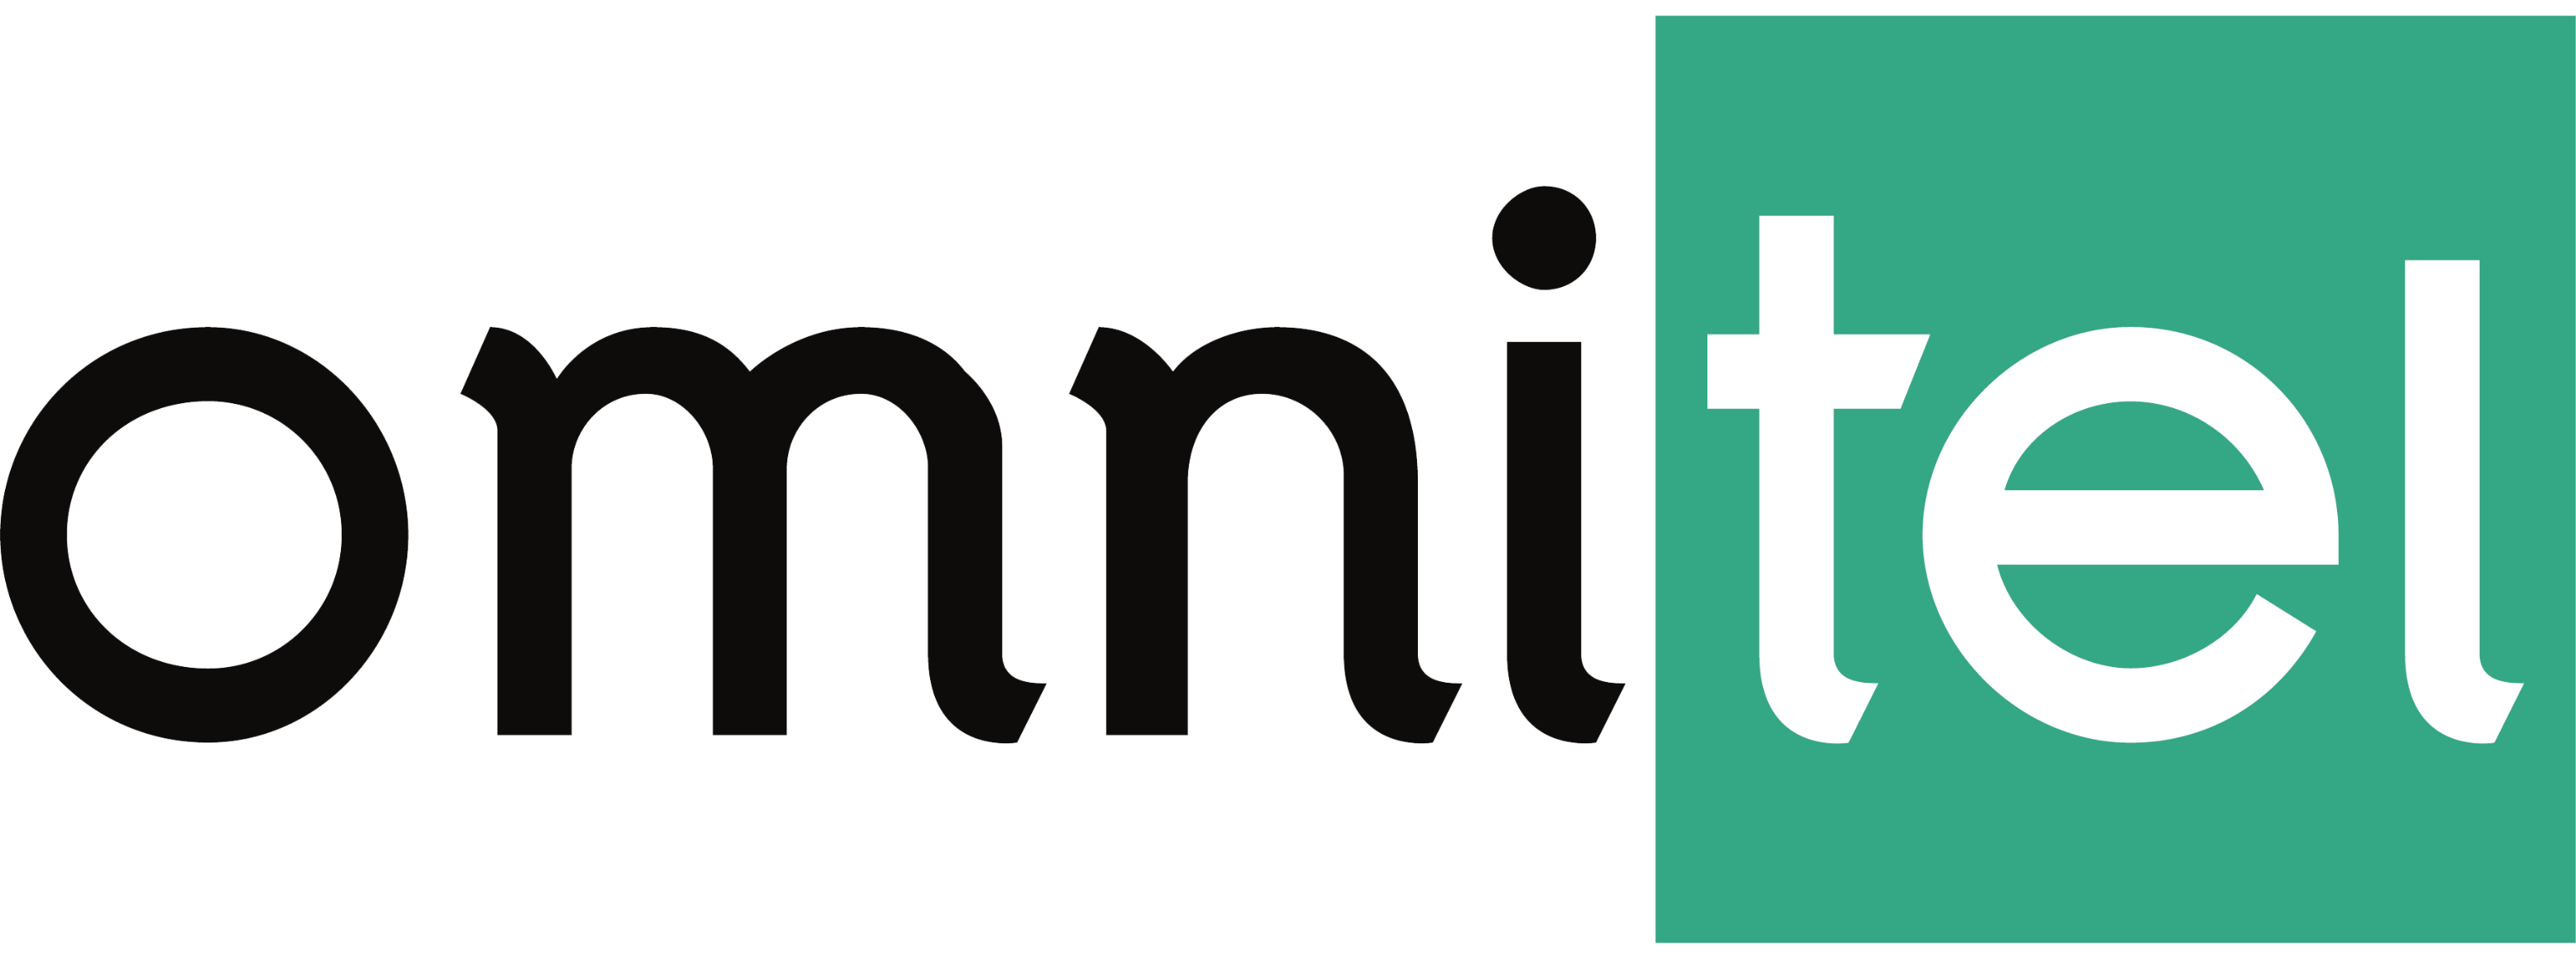 Logo Omnitel